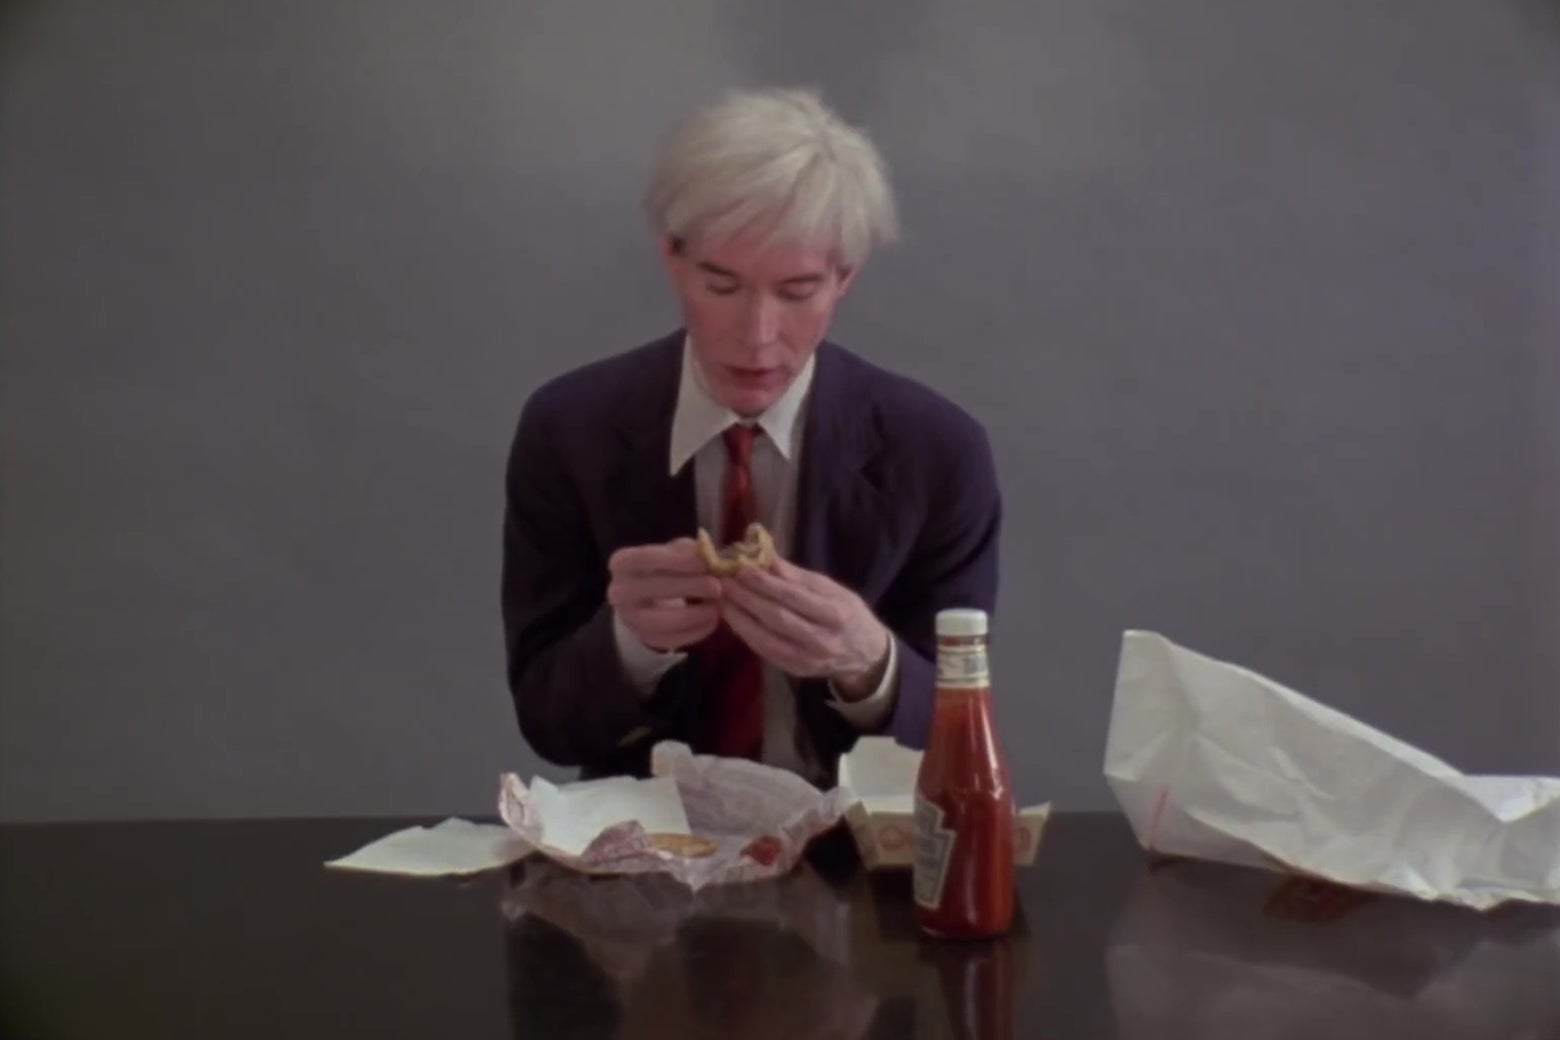 Andy Warhol, folding a Burger King hamburger in half.